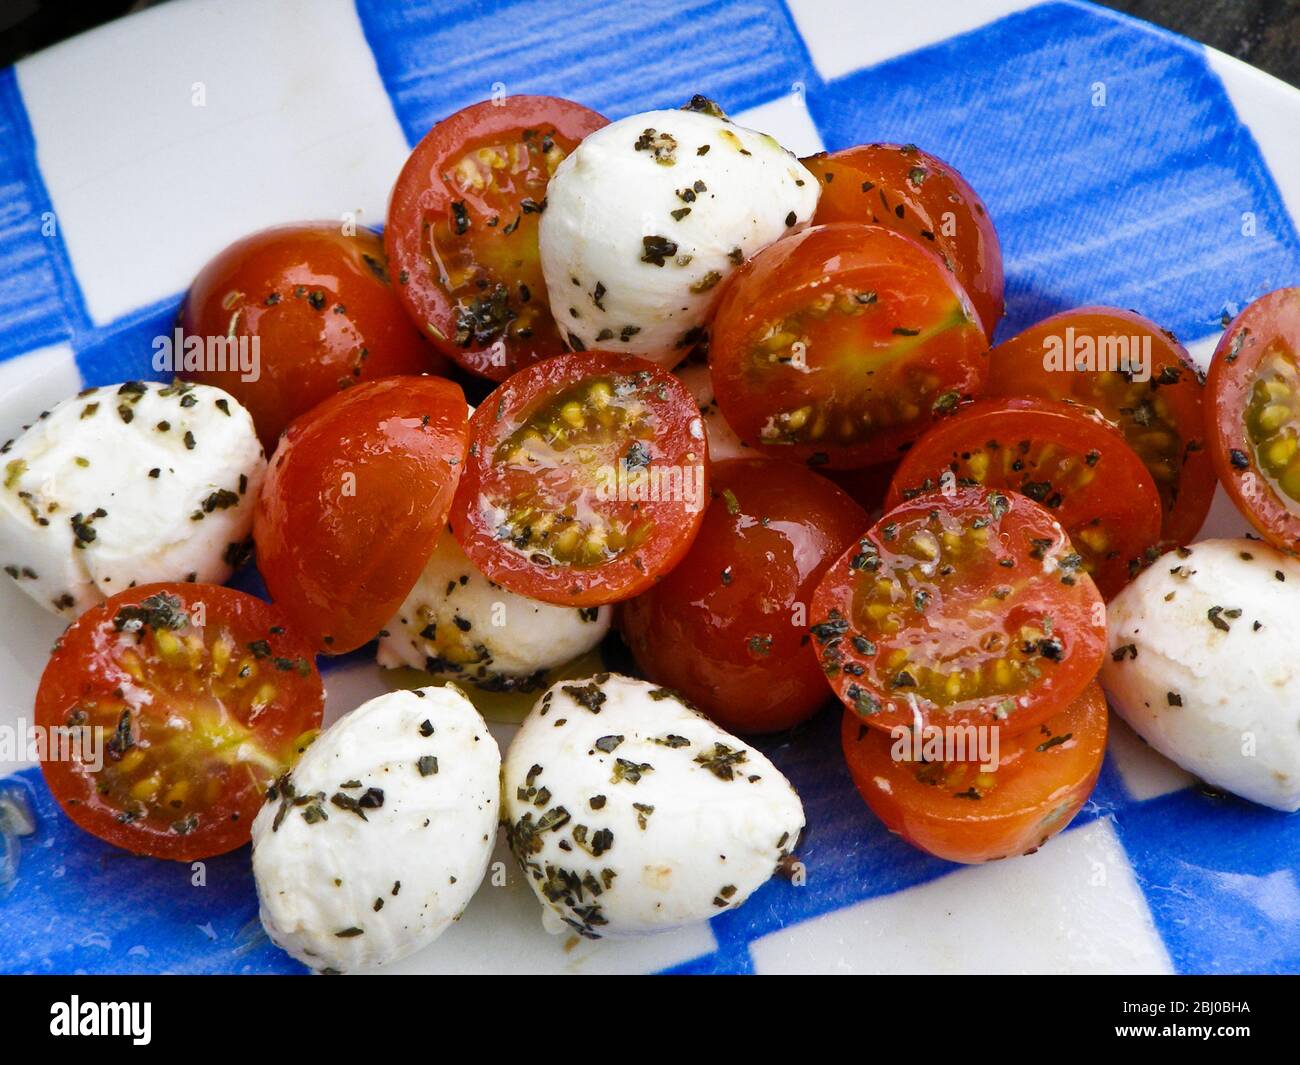 Ensalada de bolas de mozzarella con tomates cherry en aceite, vinagre y aderezo de hierbas. - Foto de stock